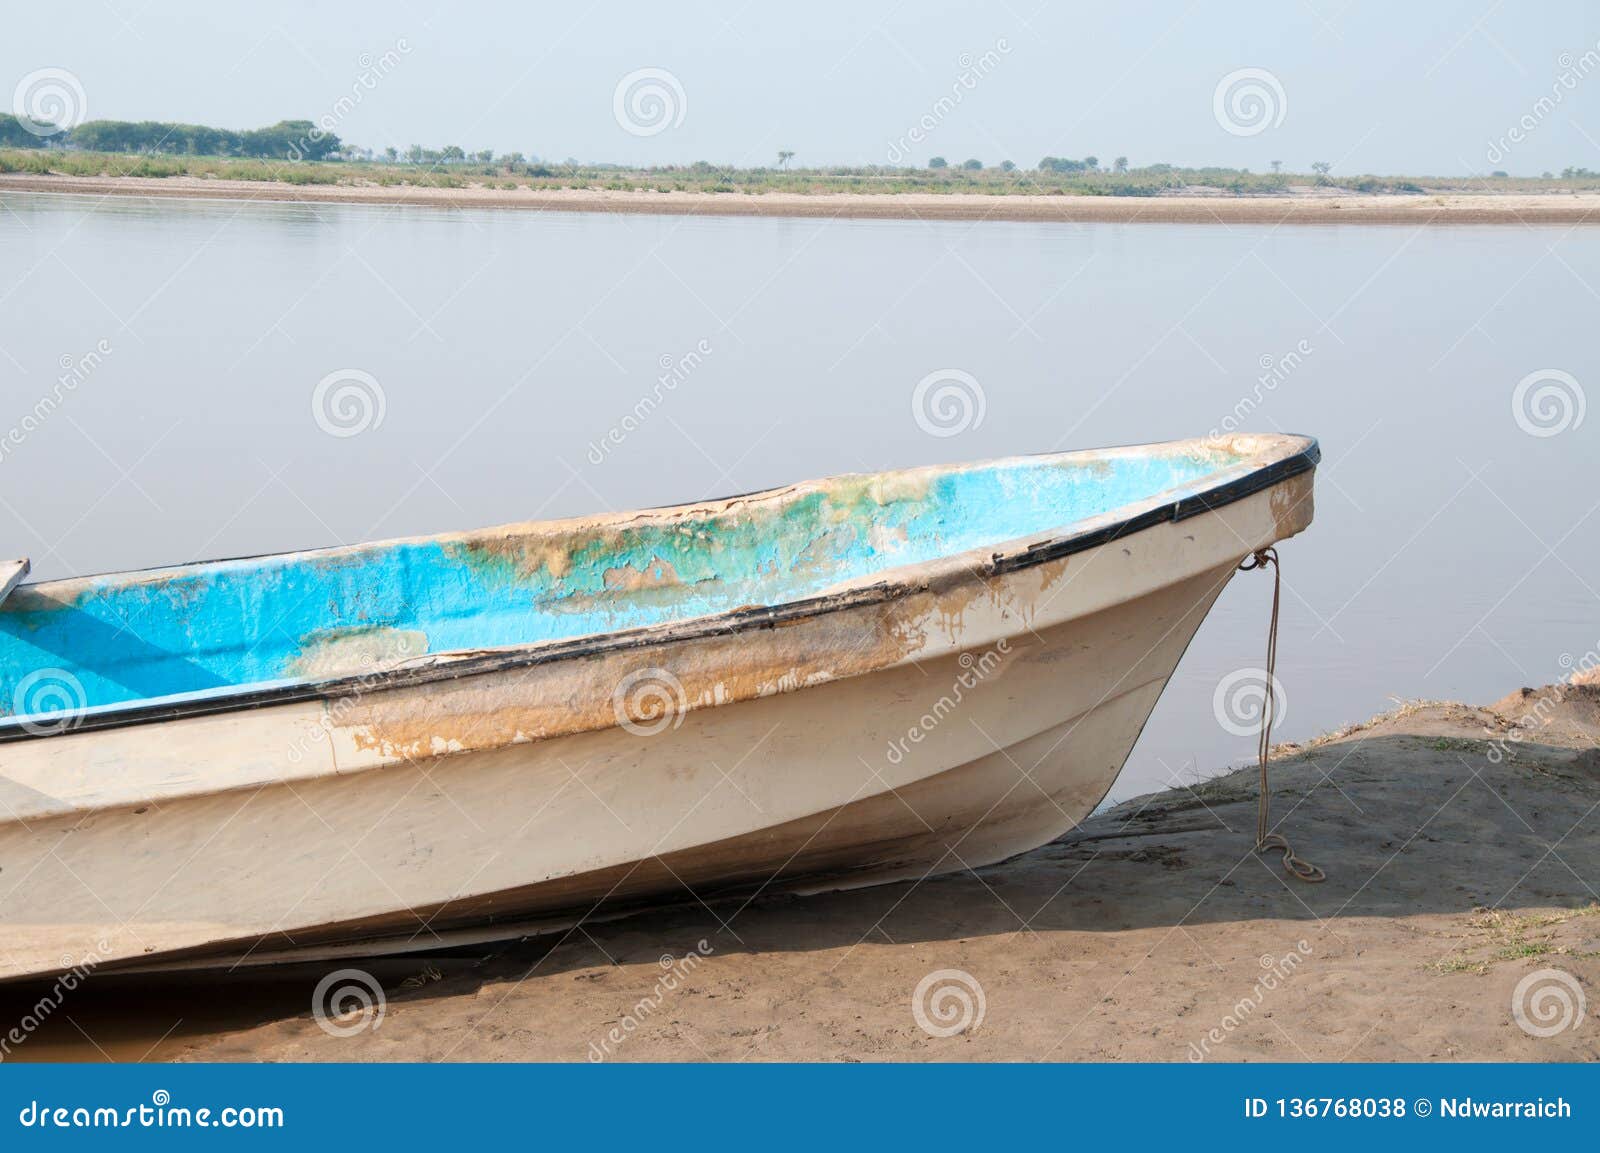 estudiar Ilegible tocino Un Barco En El Banco Del Río Foto de archivo - Imagen de barco, azul:  136768038